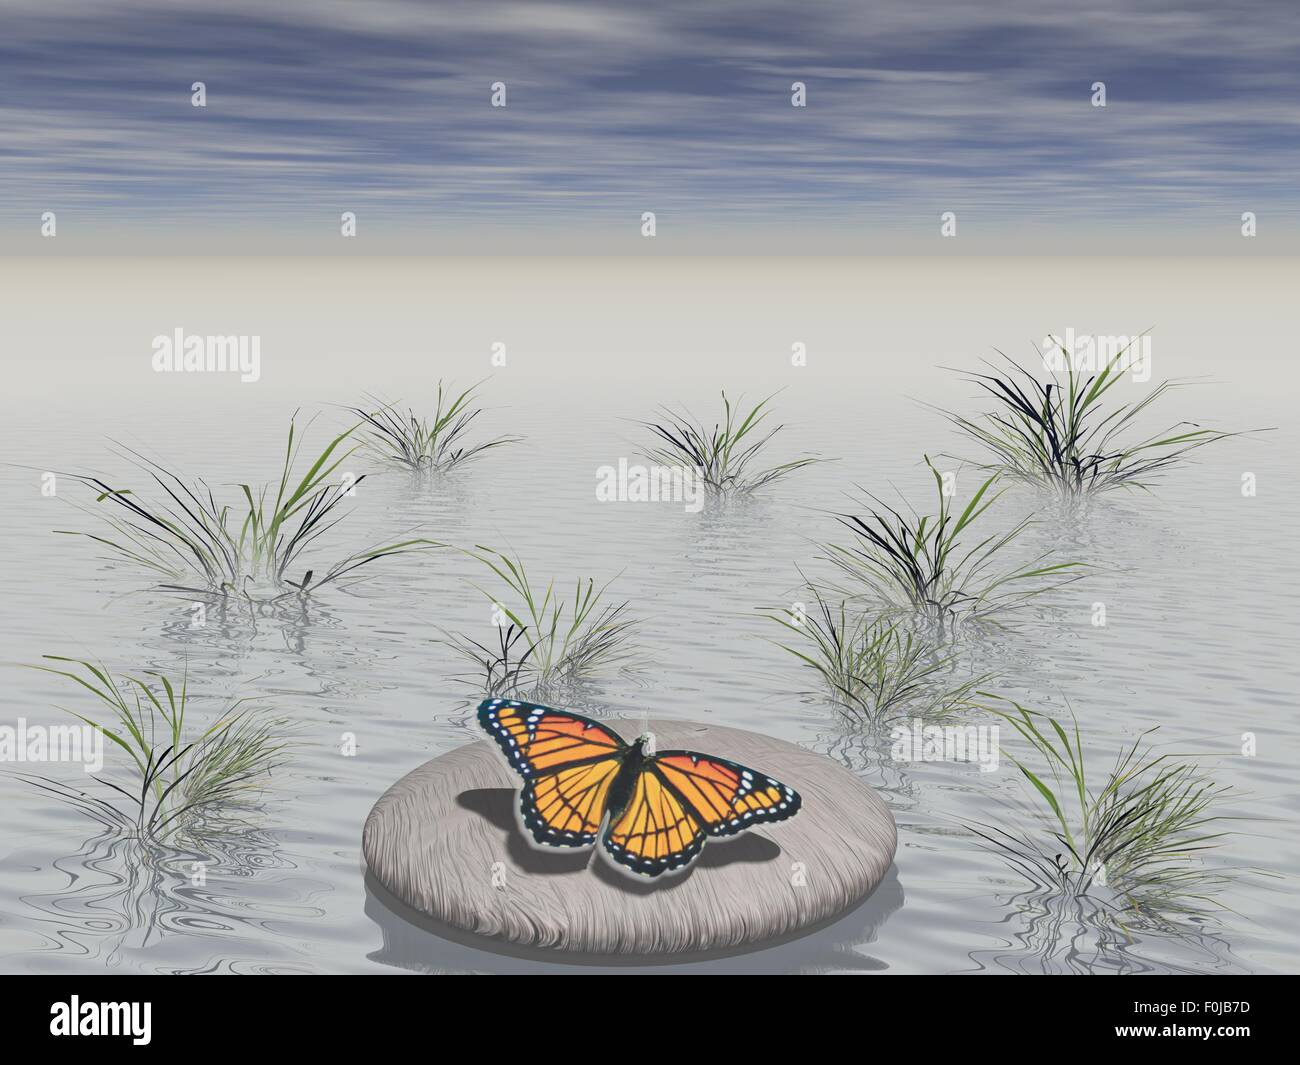 Butterfly sentado sobre una piedra rodeada de agua Foto de stock